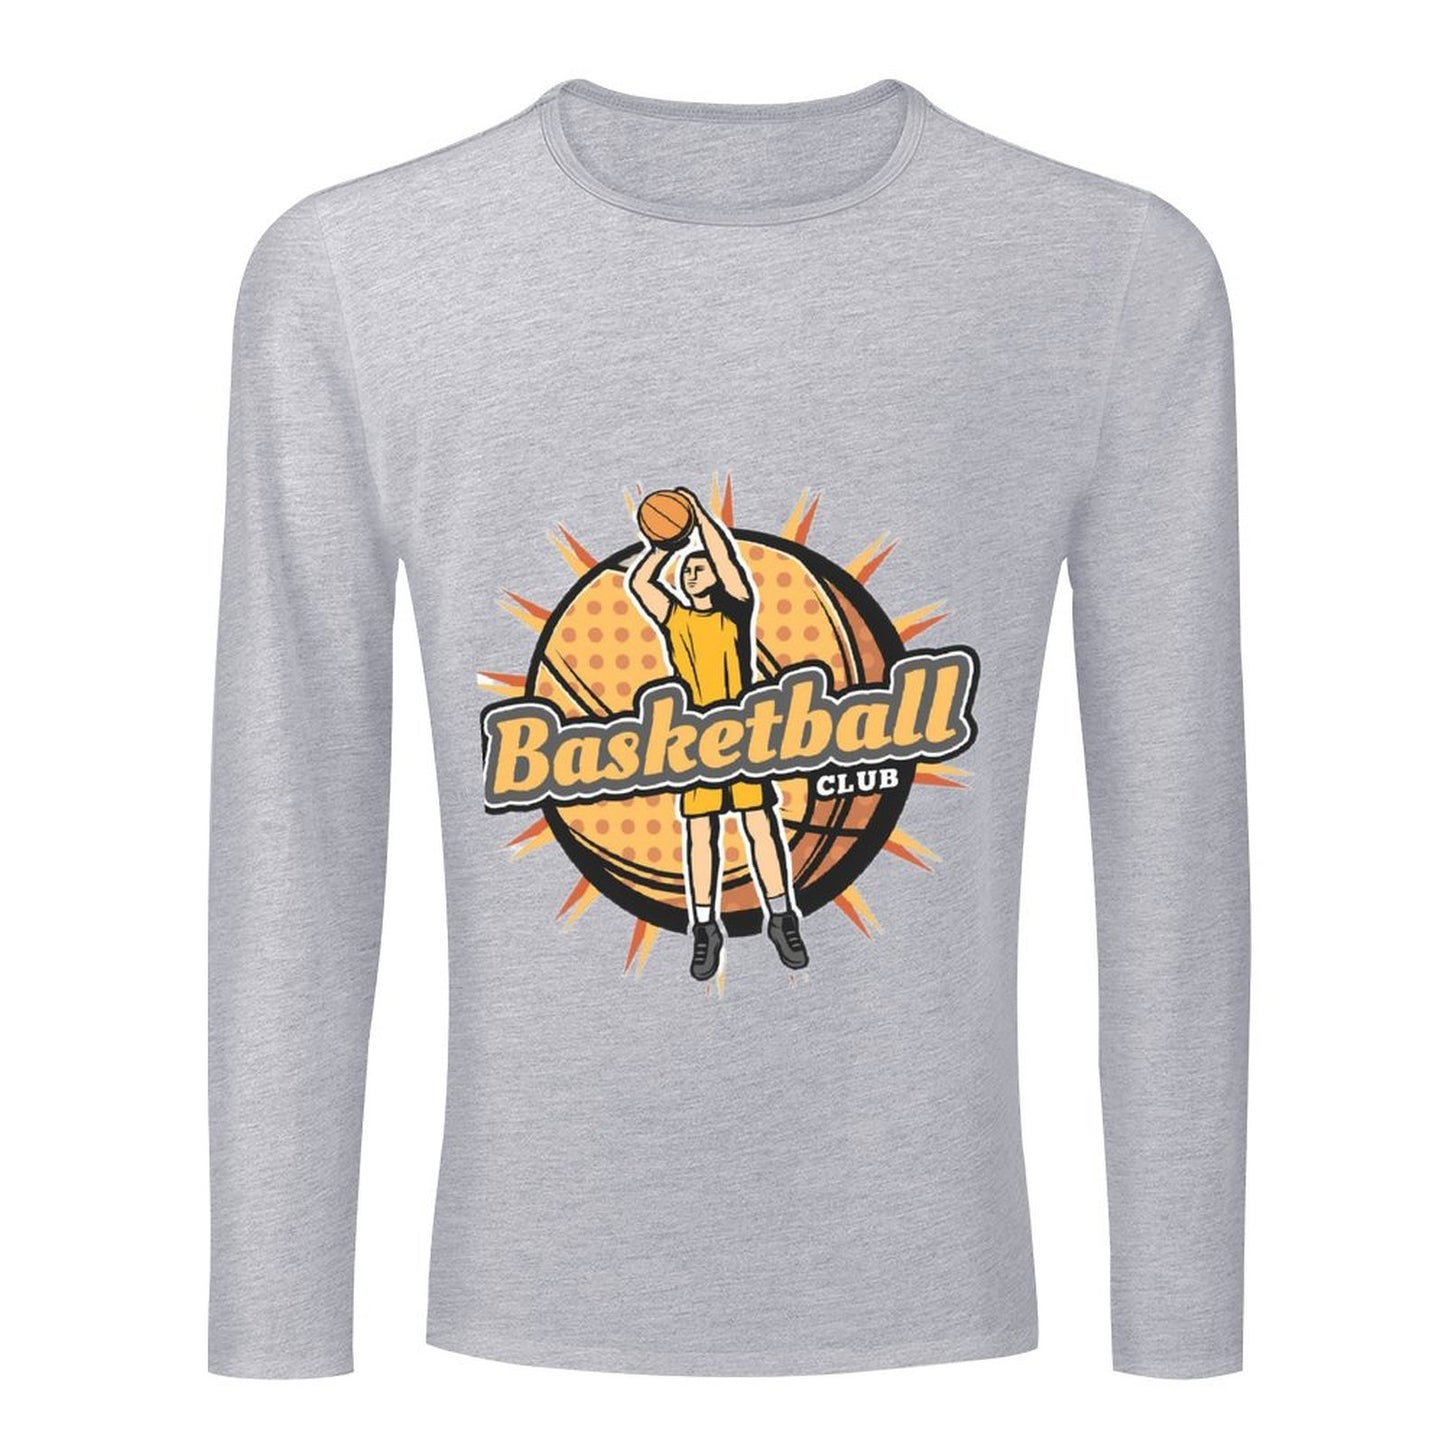 Online Customize T-shirt for Men Men's CrewNeck Long Sleeve T-shirt Basketball Player